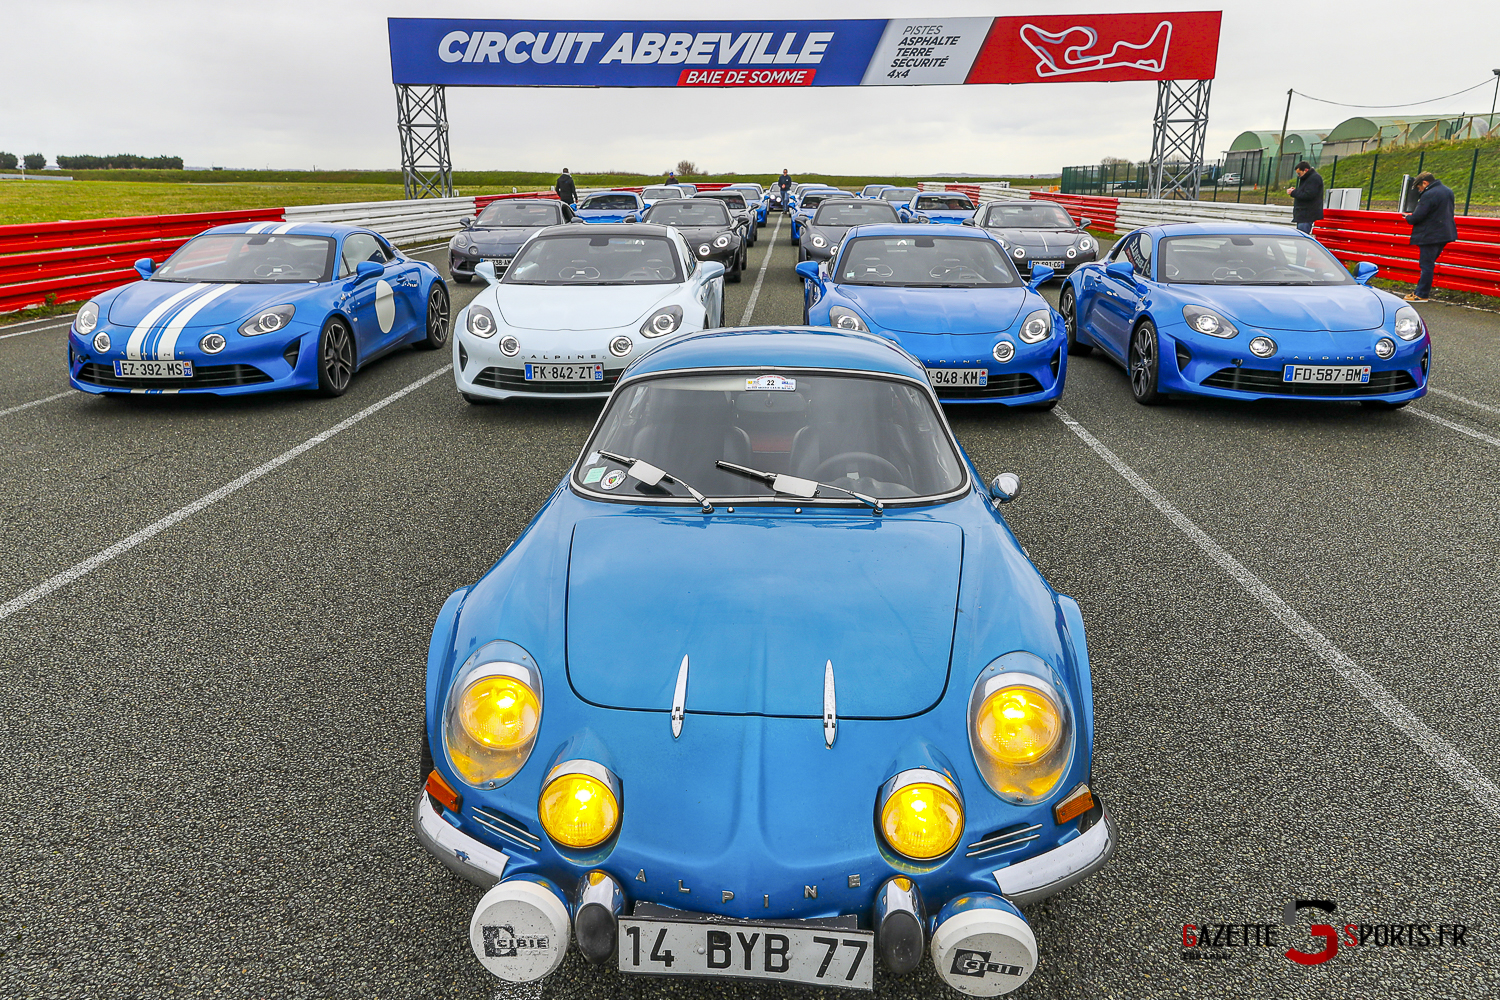 Stadium Automobile Abbeville — Circuit automobile de la Baie de Somme